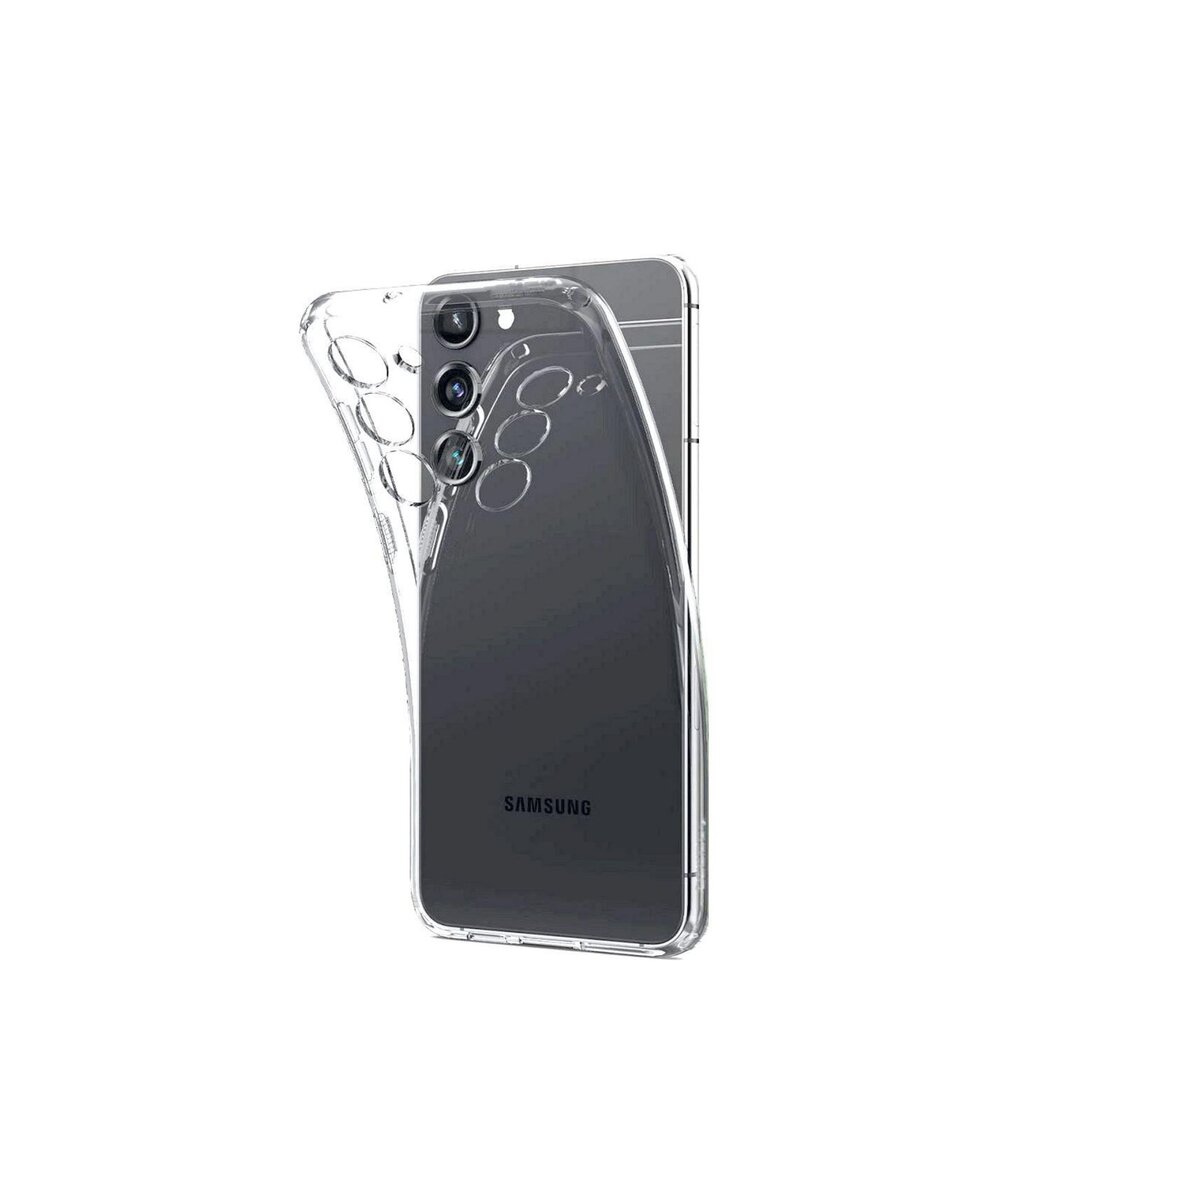 amahousse Vitre Galaxy S23 protection d'écran en verre trempé pas cher 